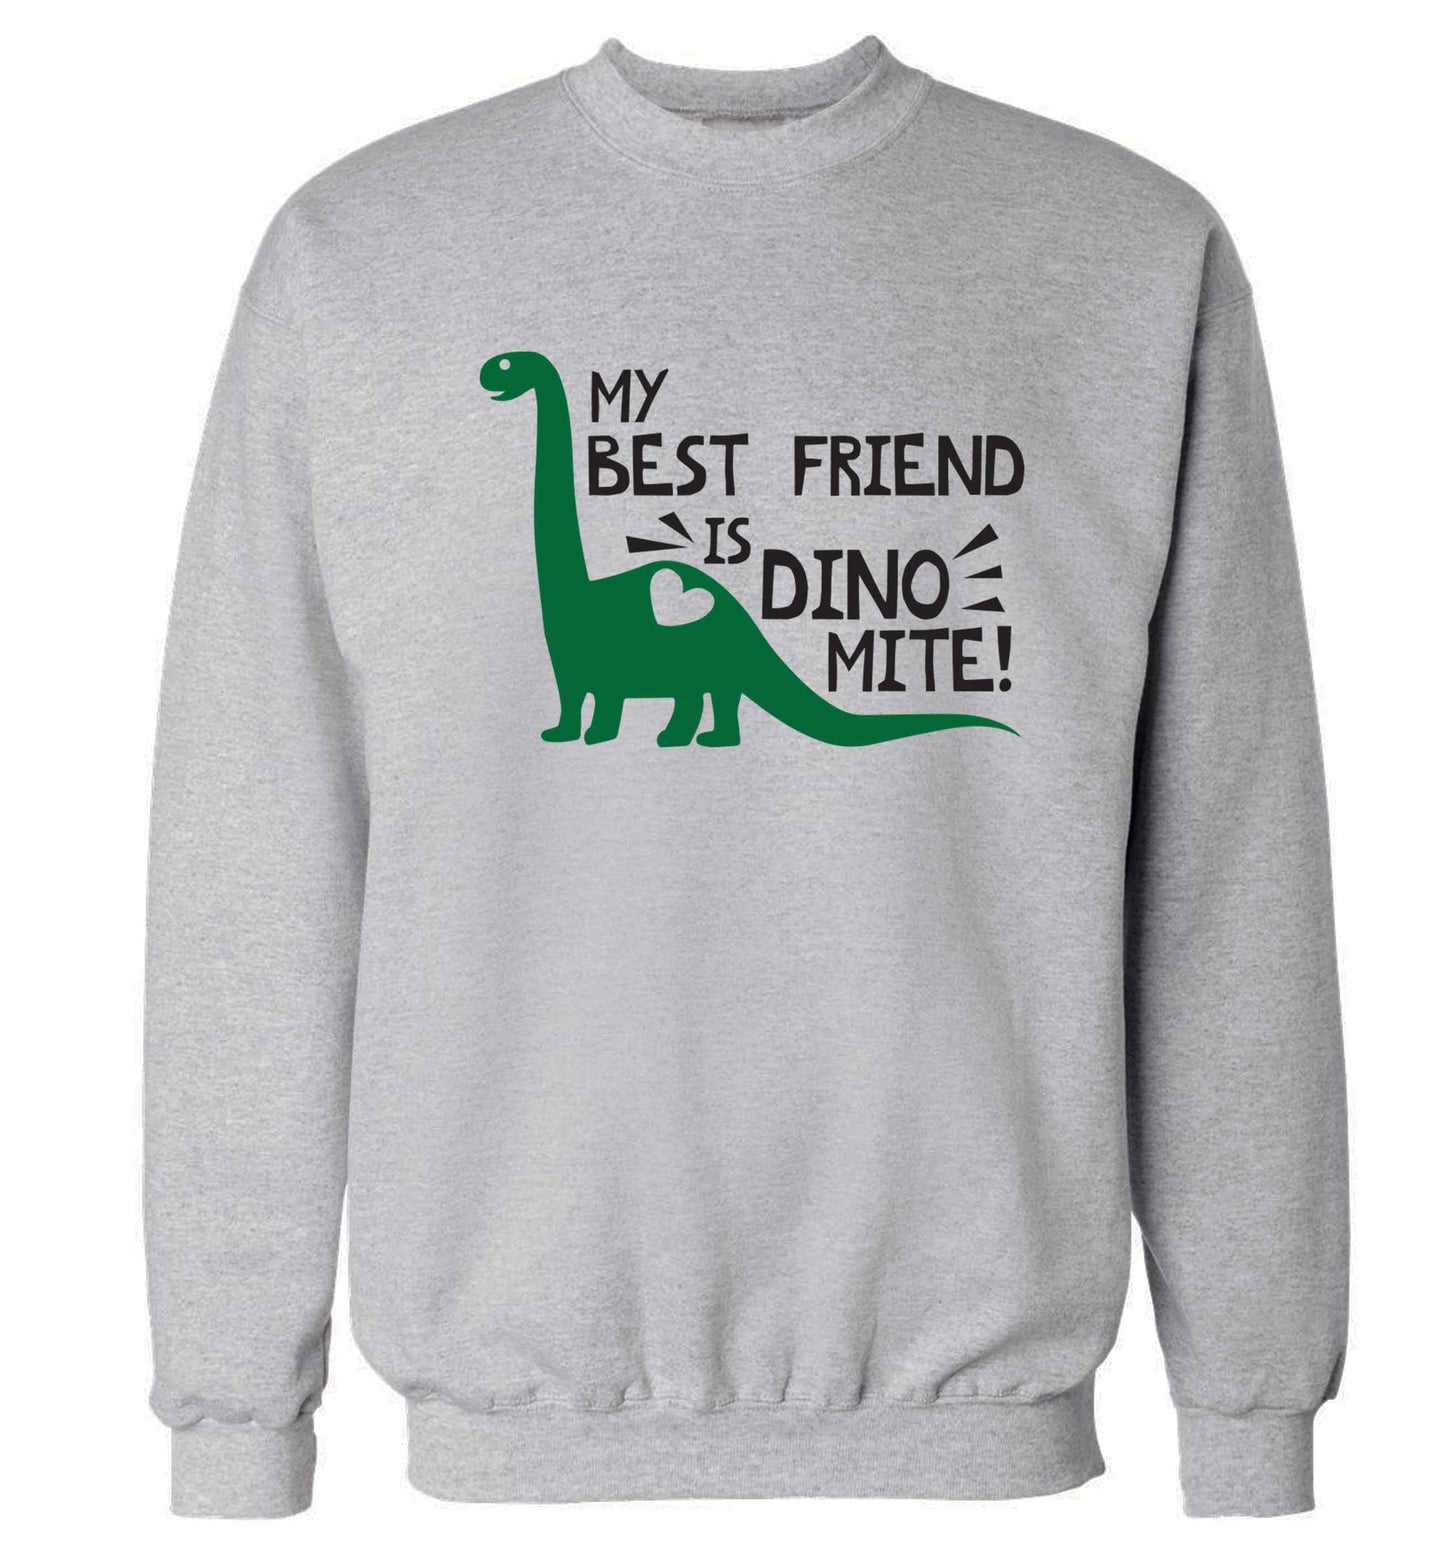 My best friend is dinomite! Adult's unisex grey Sweater 2XL